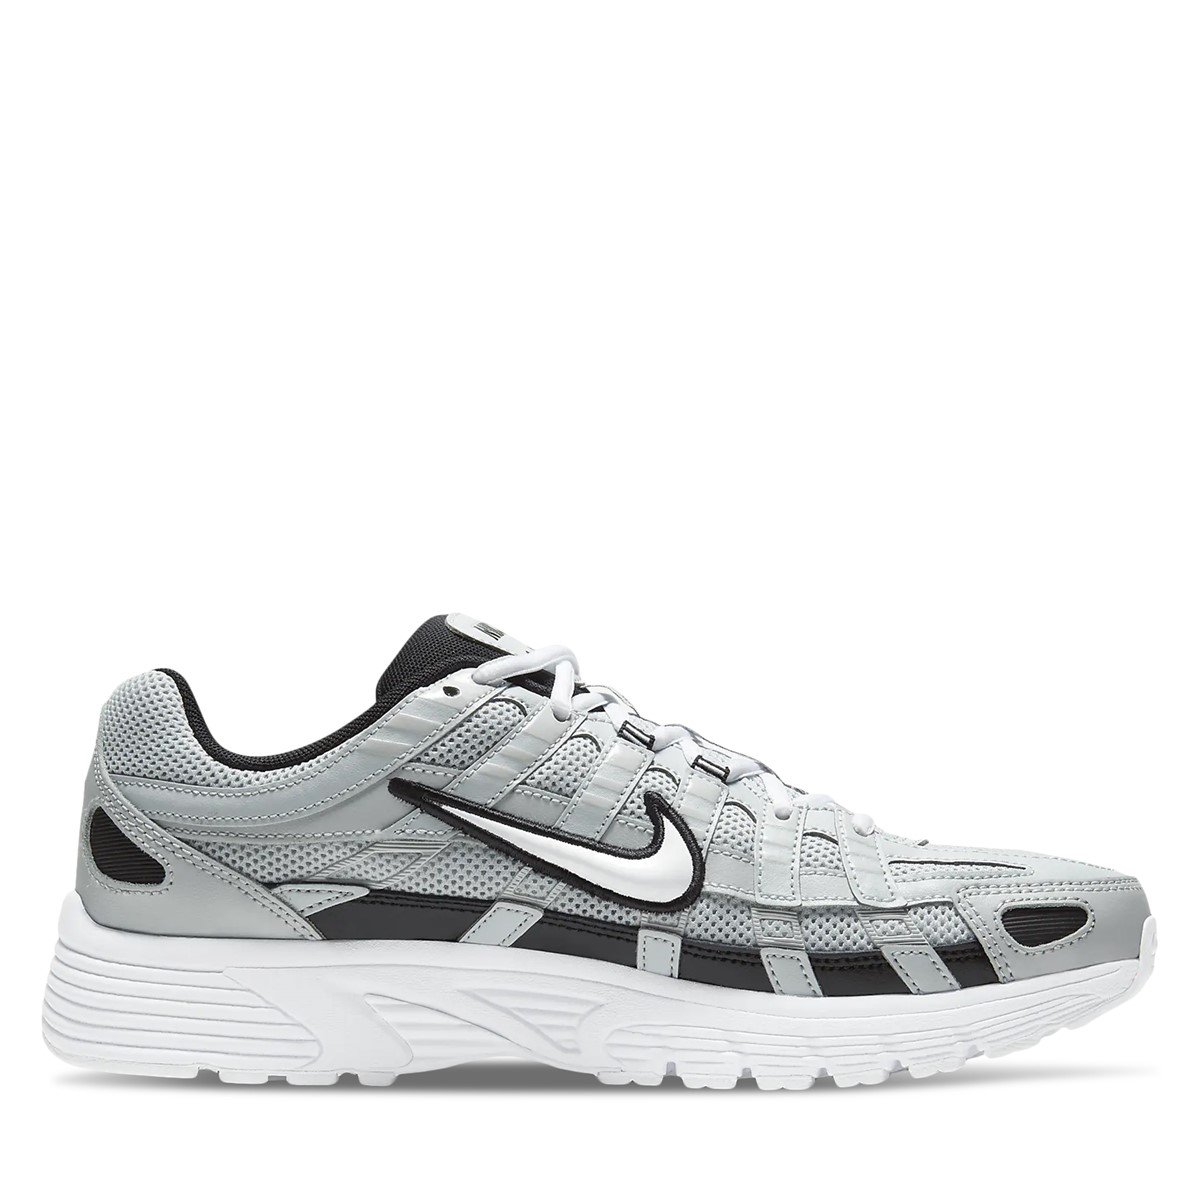 Men's P-6000 Sneakers in Grey/Black/White